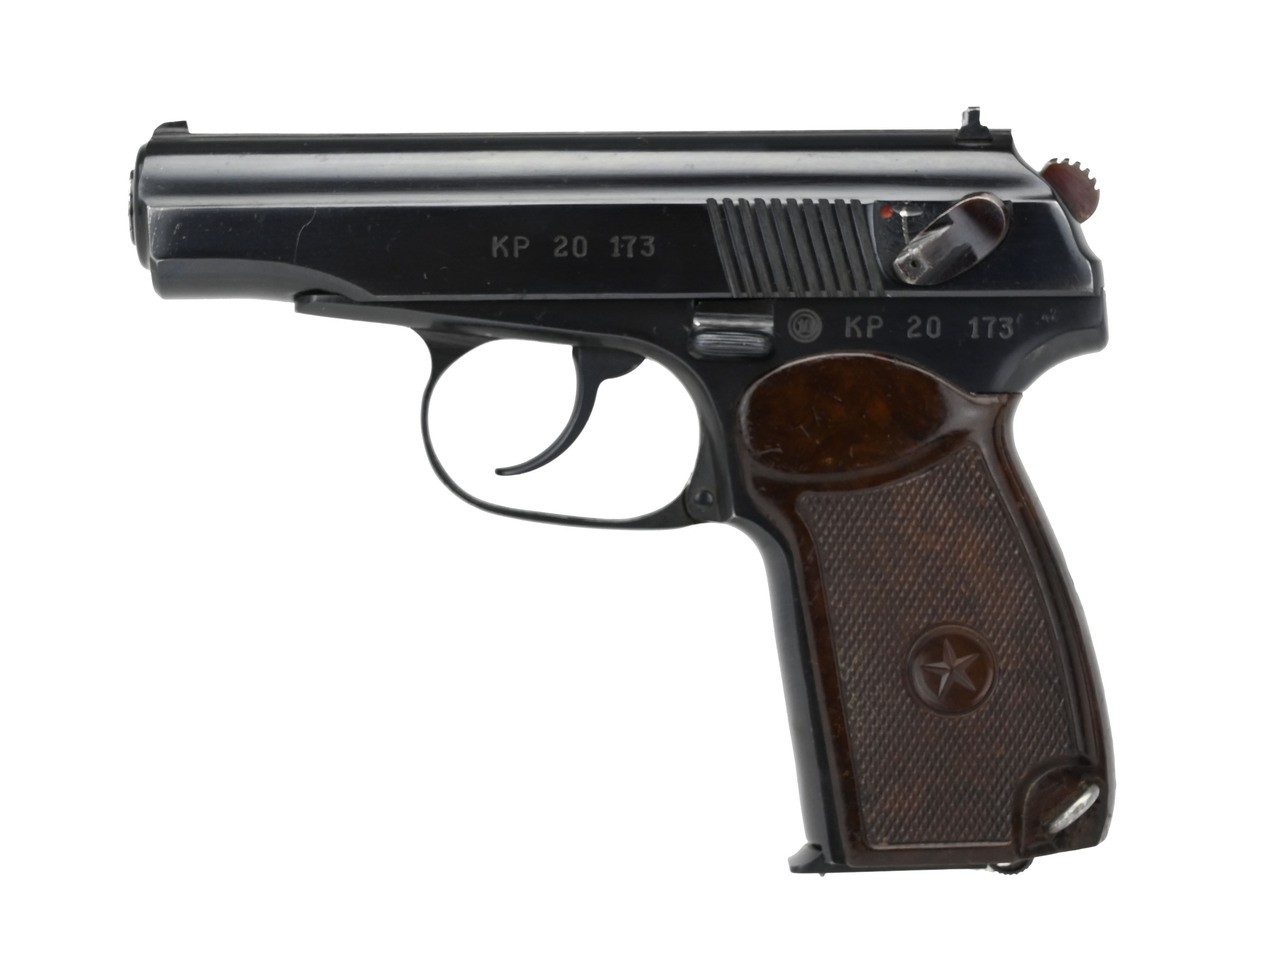 bulgarian makarov pistol grips